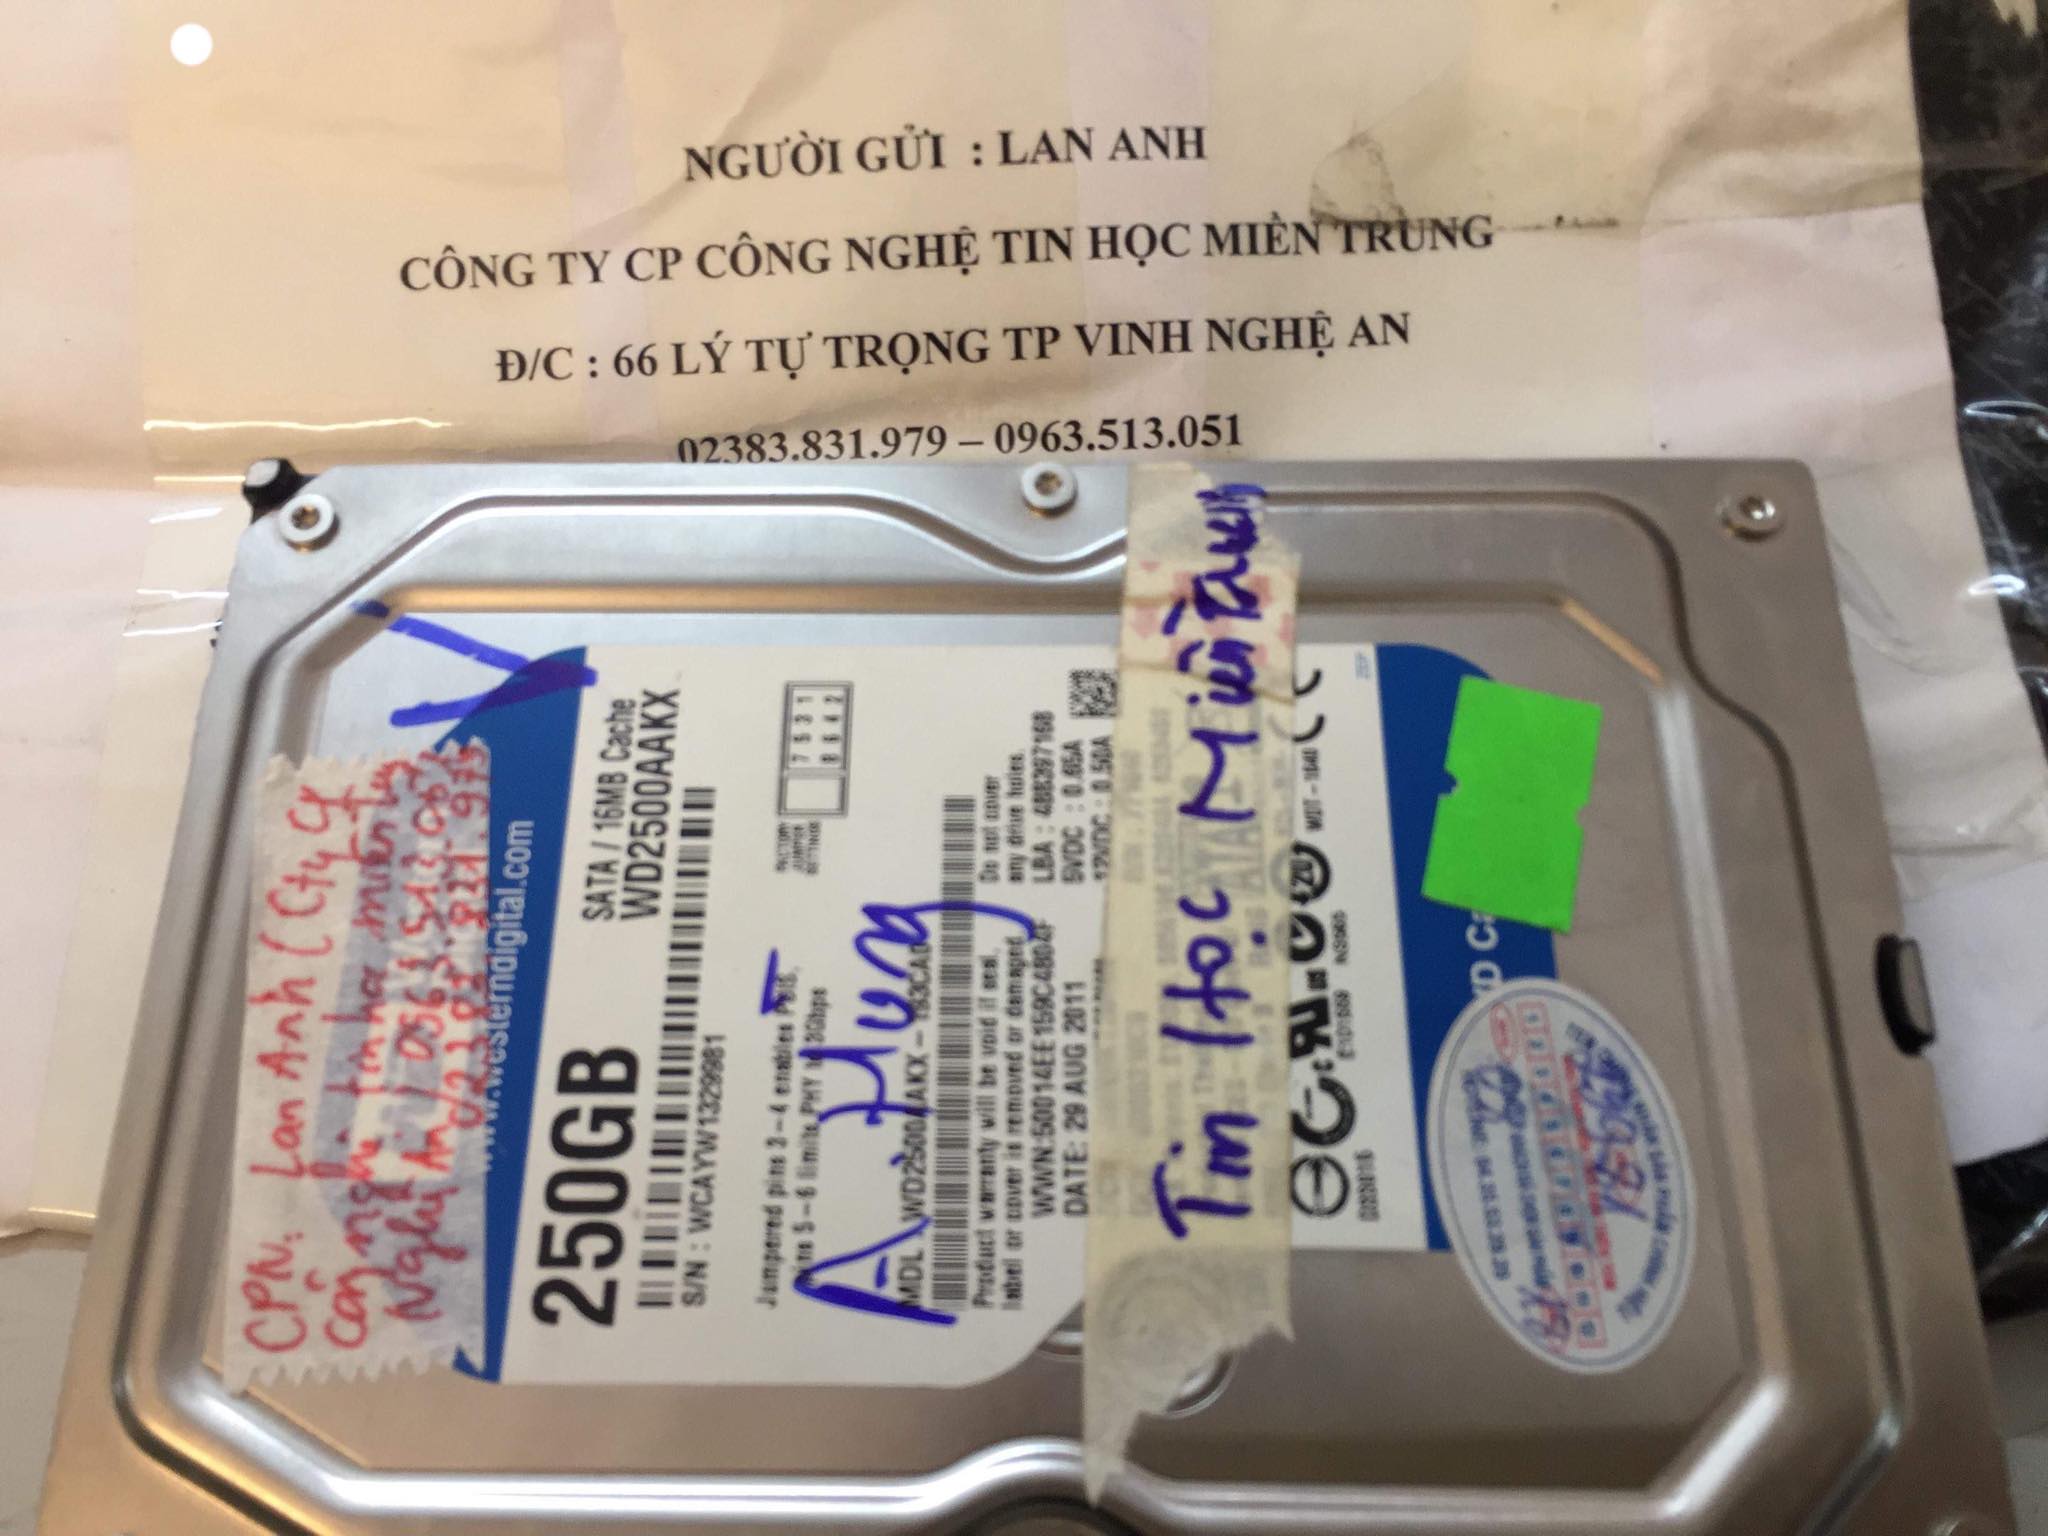 Cứu dữ liệu ổ cứng Western 250GB lỗi đầu đọc tại Nghệ An 16/04/2019 - cuumaytinh